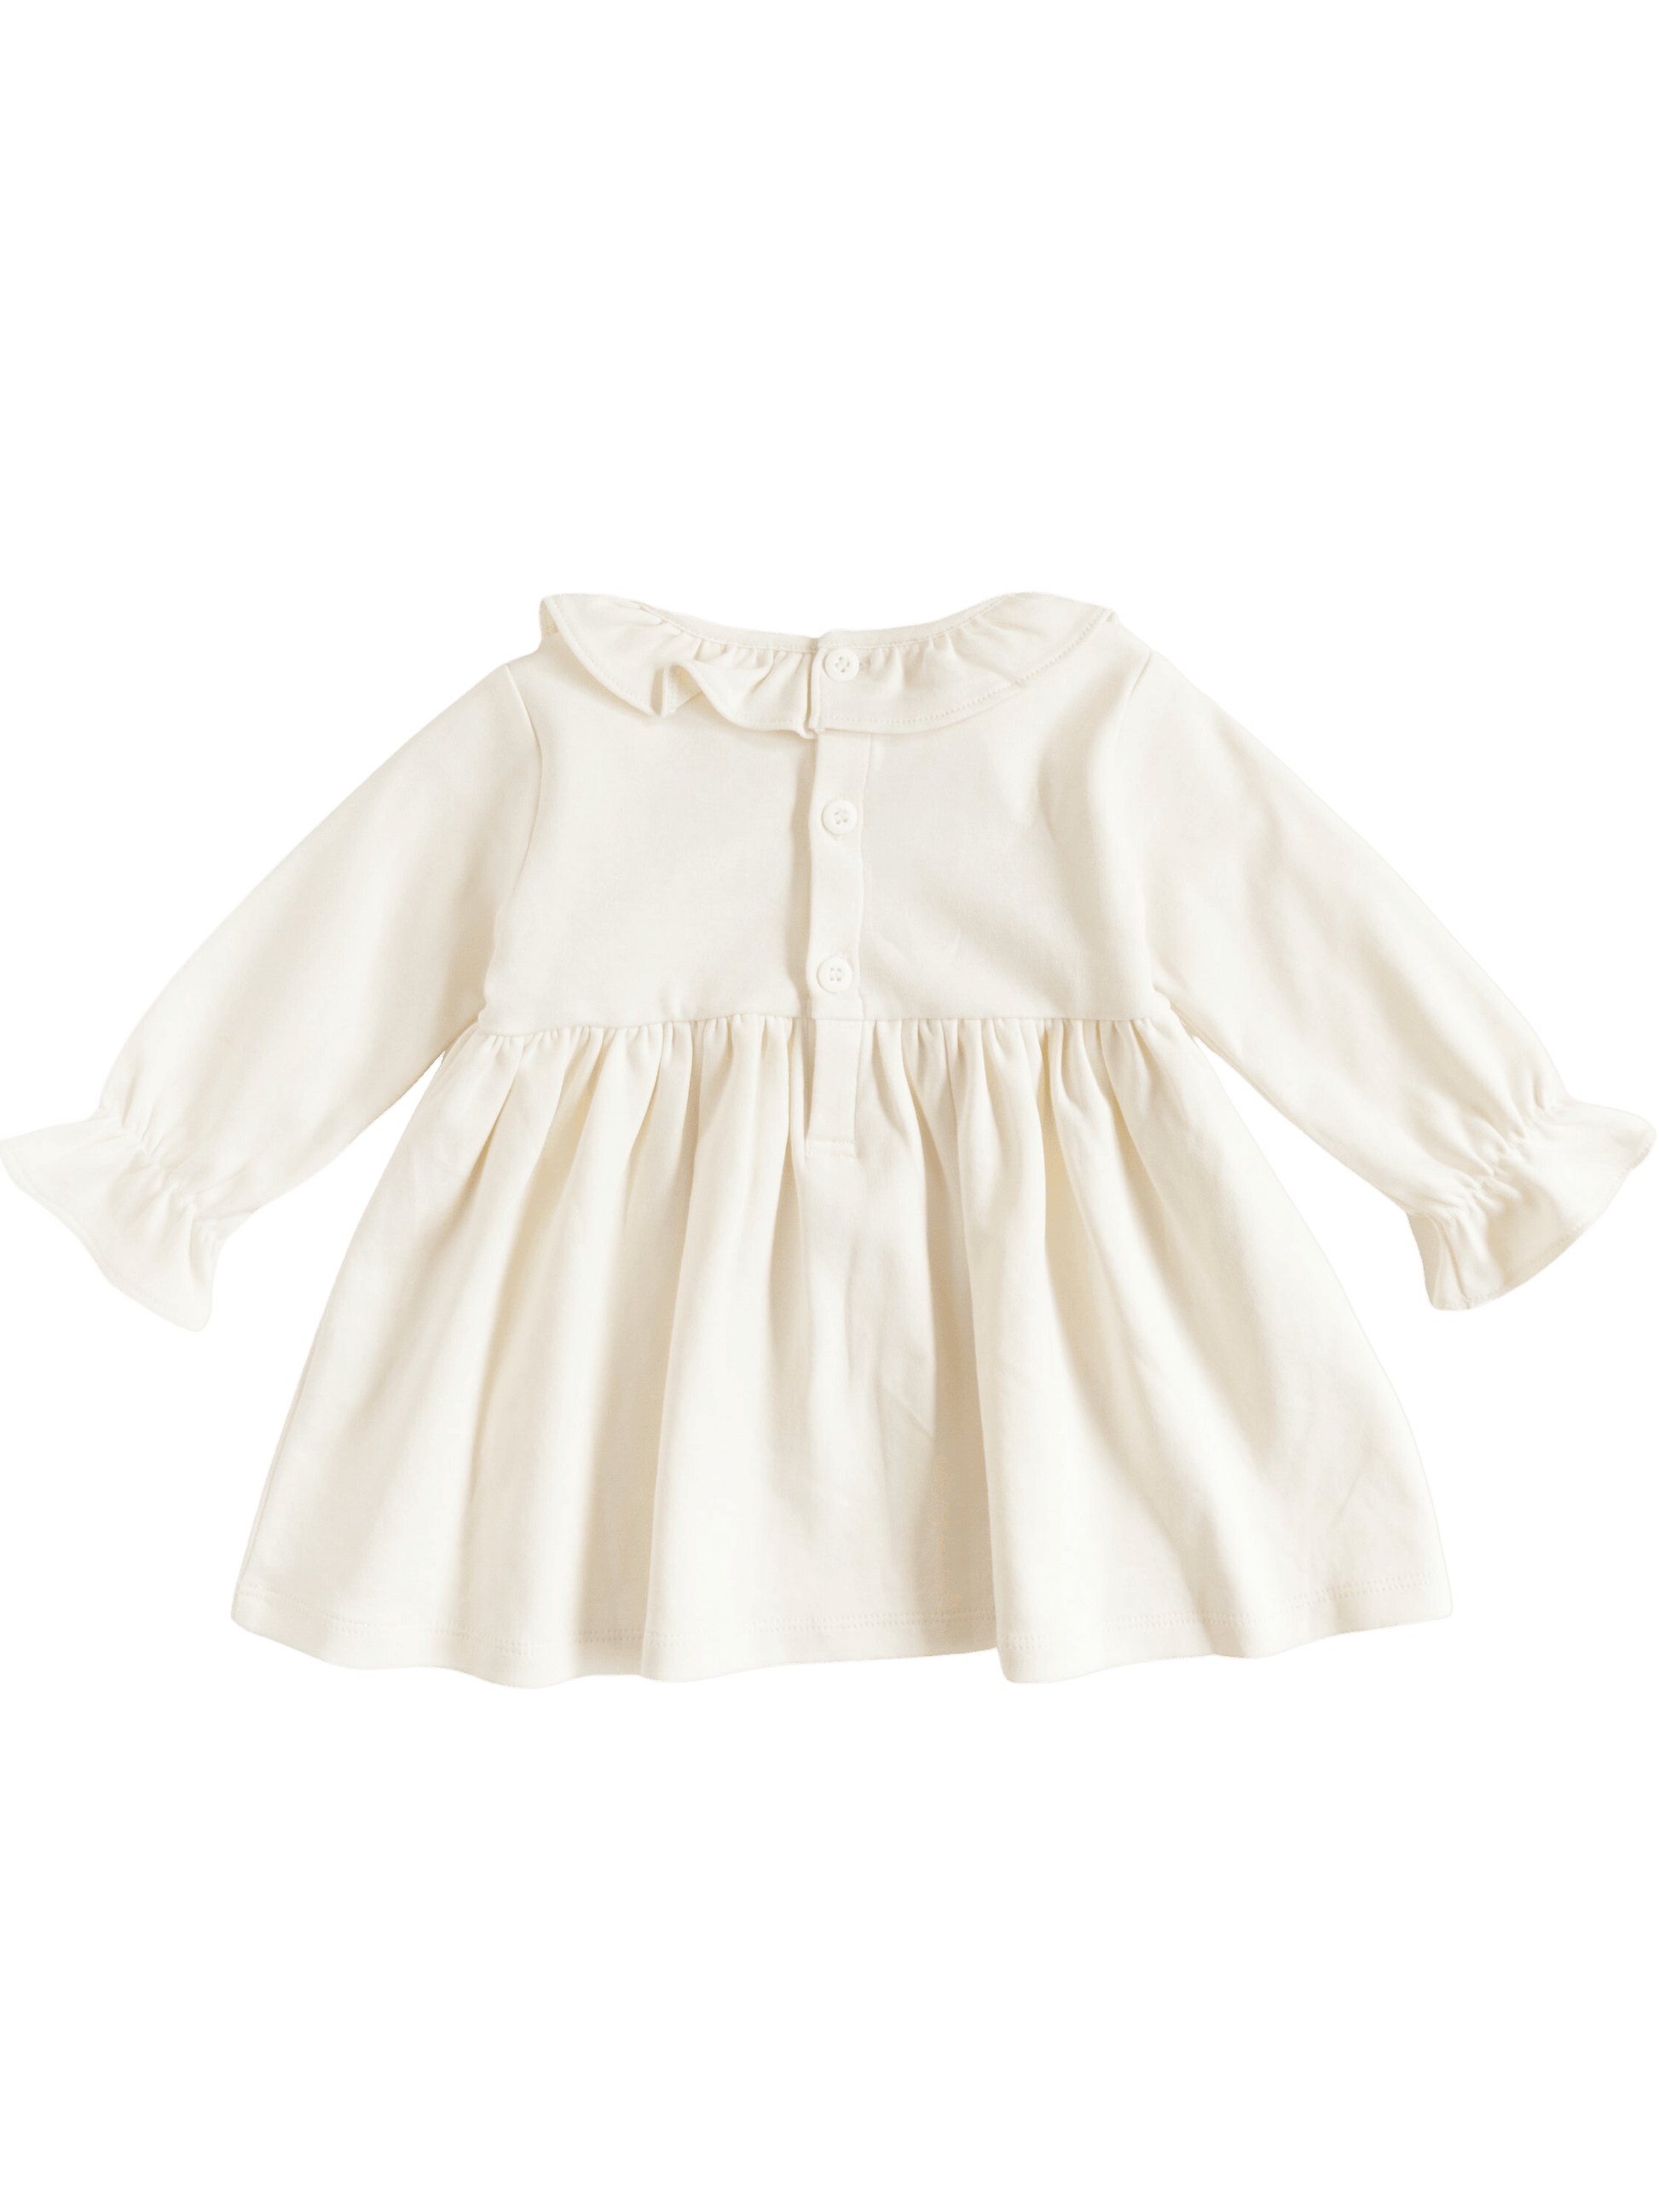 Pima Cotton Heidi Infant Dress - Kit James